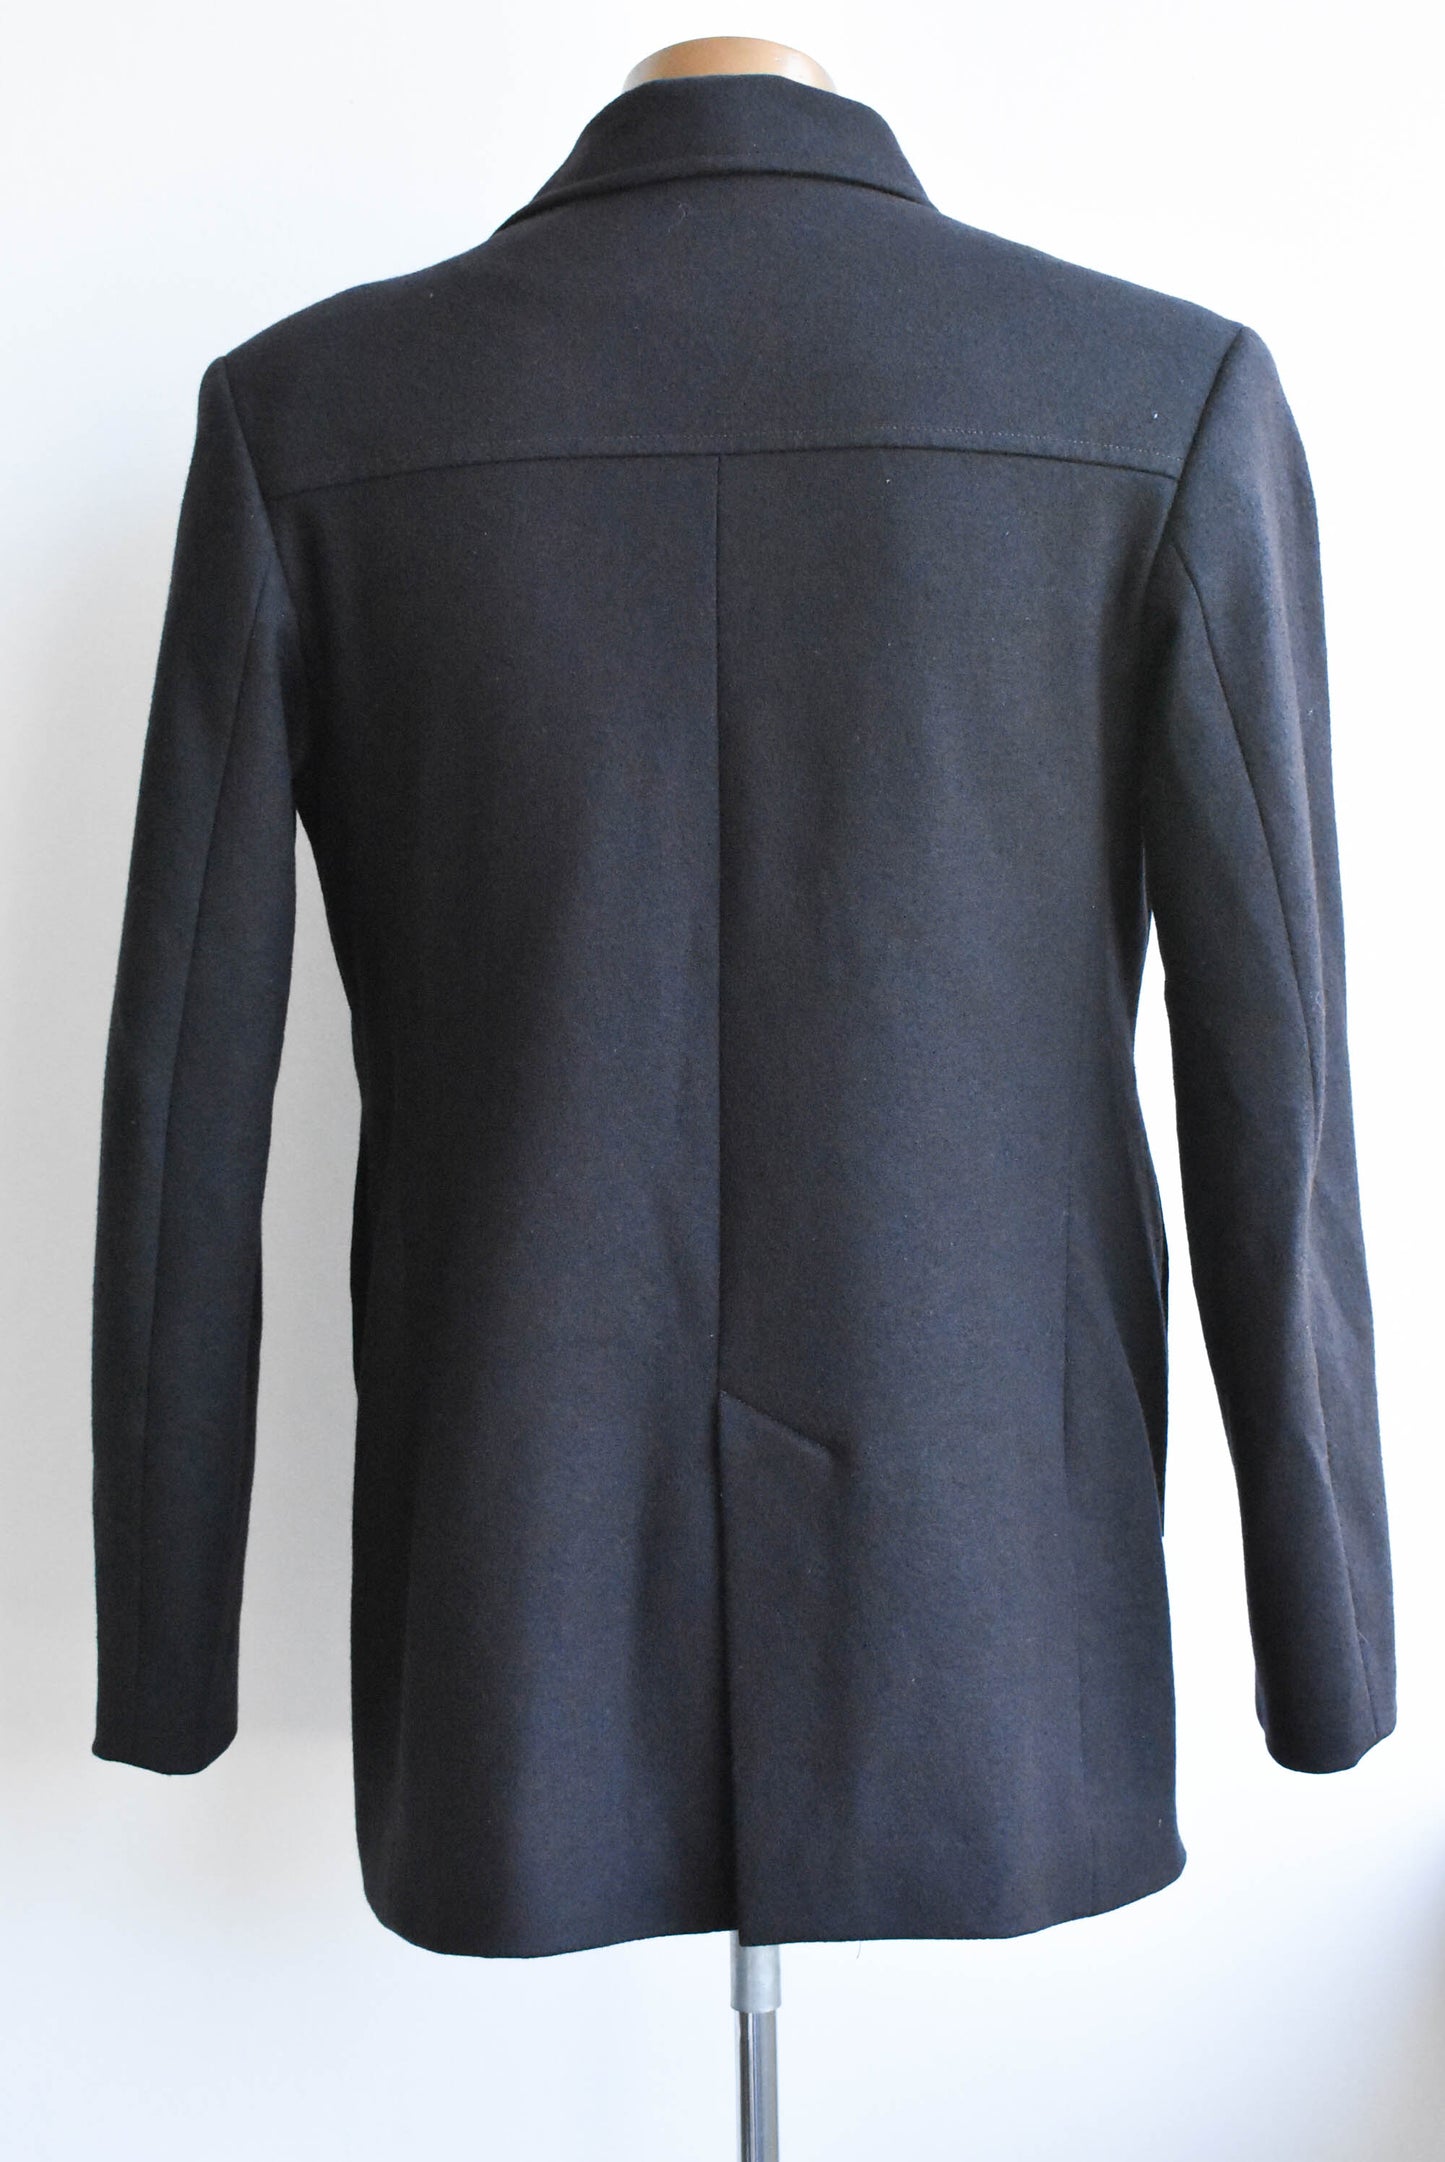 Icebreaker merino wool jacket, size M